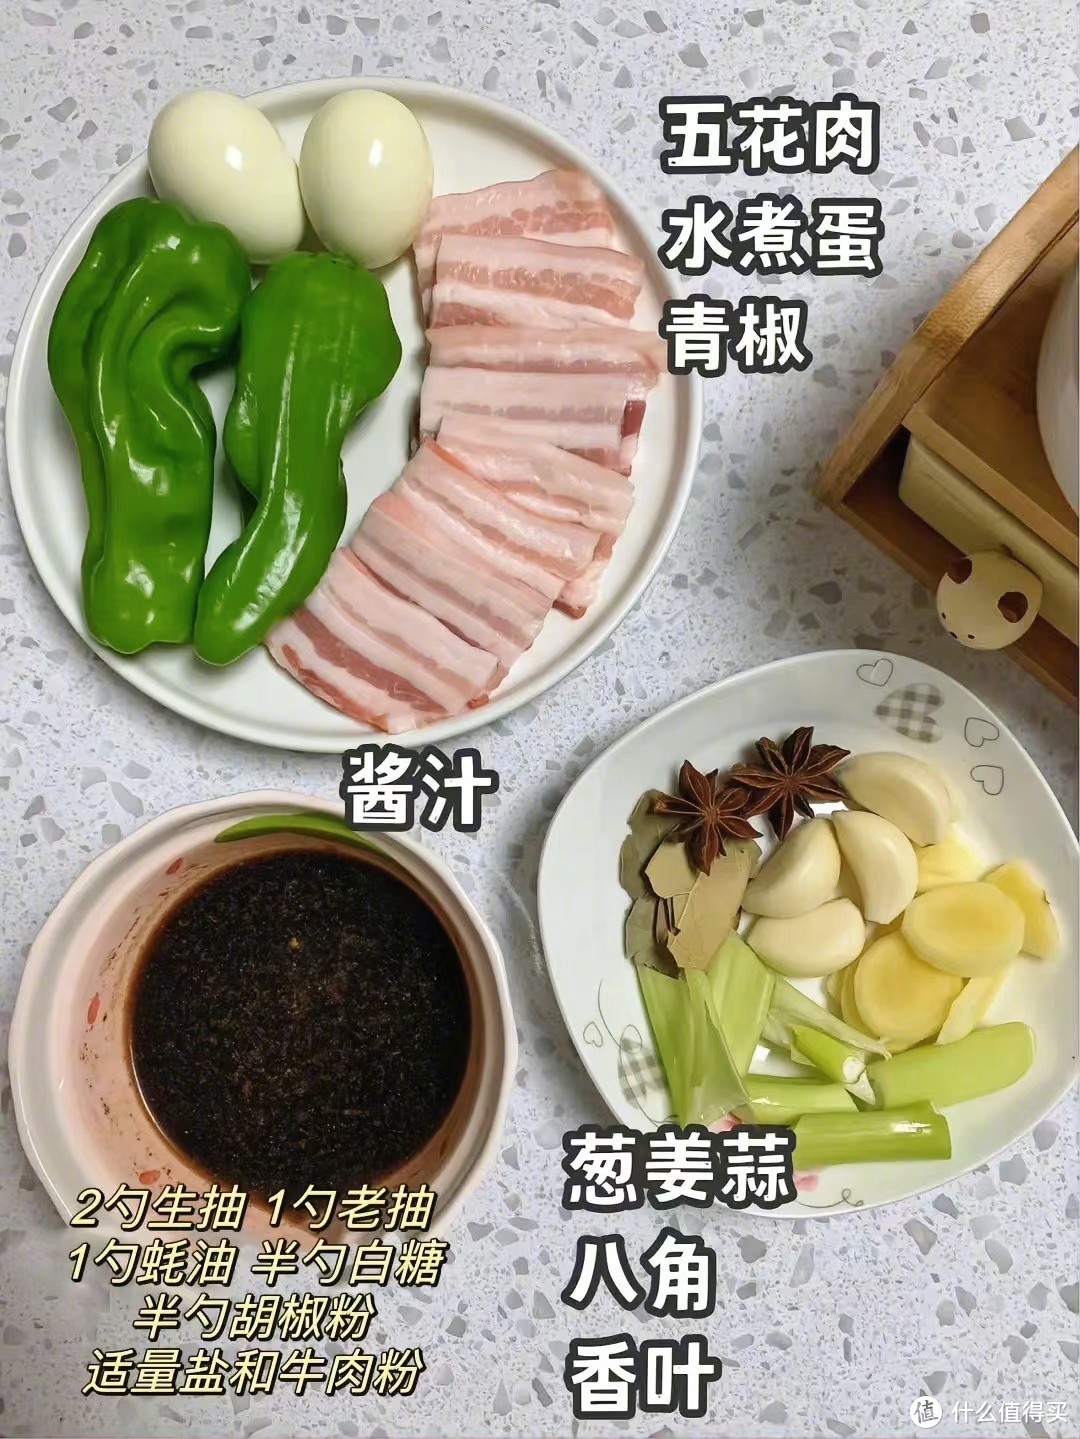 济南与徐州争了多年的“把子肉”简易版，搭配虎皮蛋虎皮椒，这不得多炫两碗饭？！！！